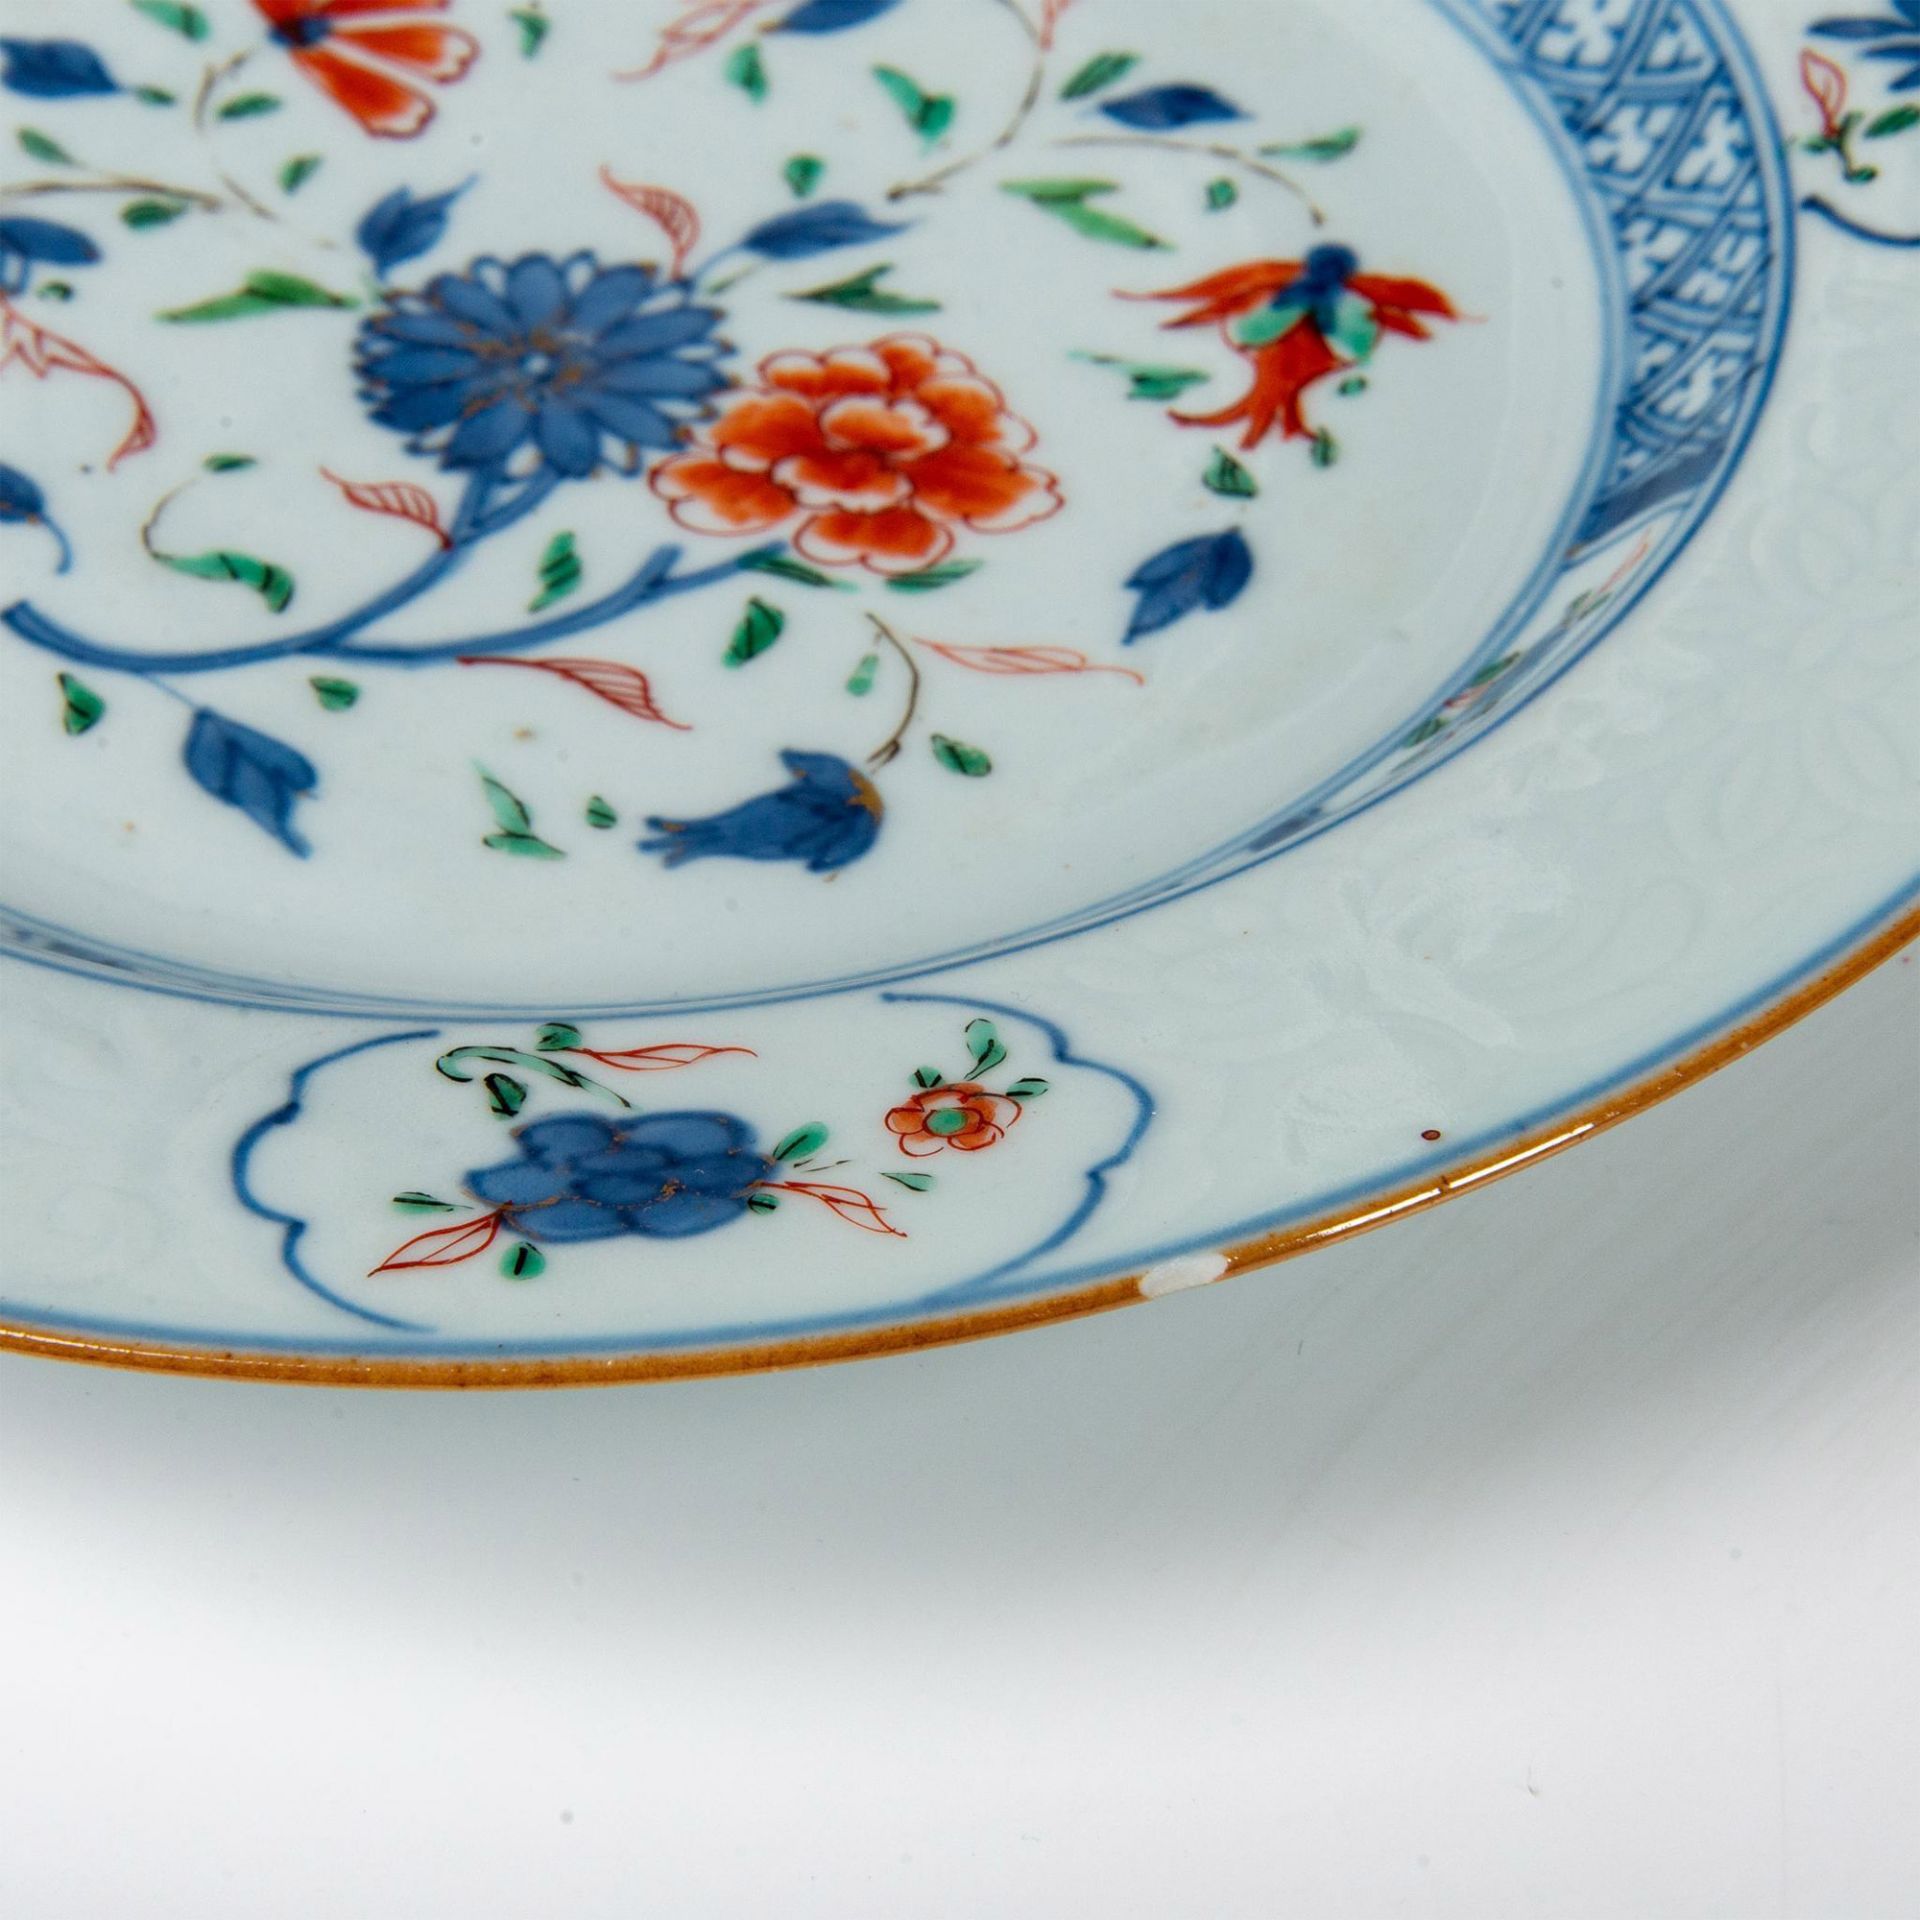 6pc Chinese Imari Porcelain Salad Plates - Image 5 of 5